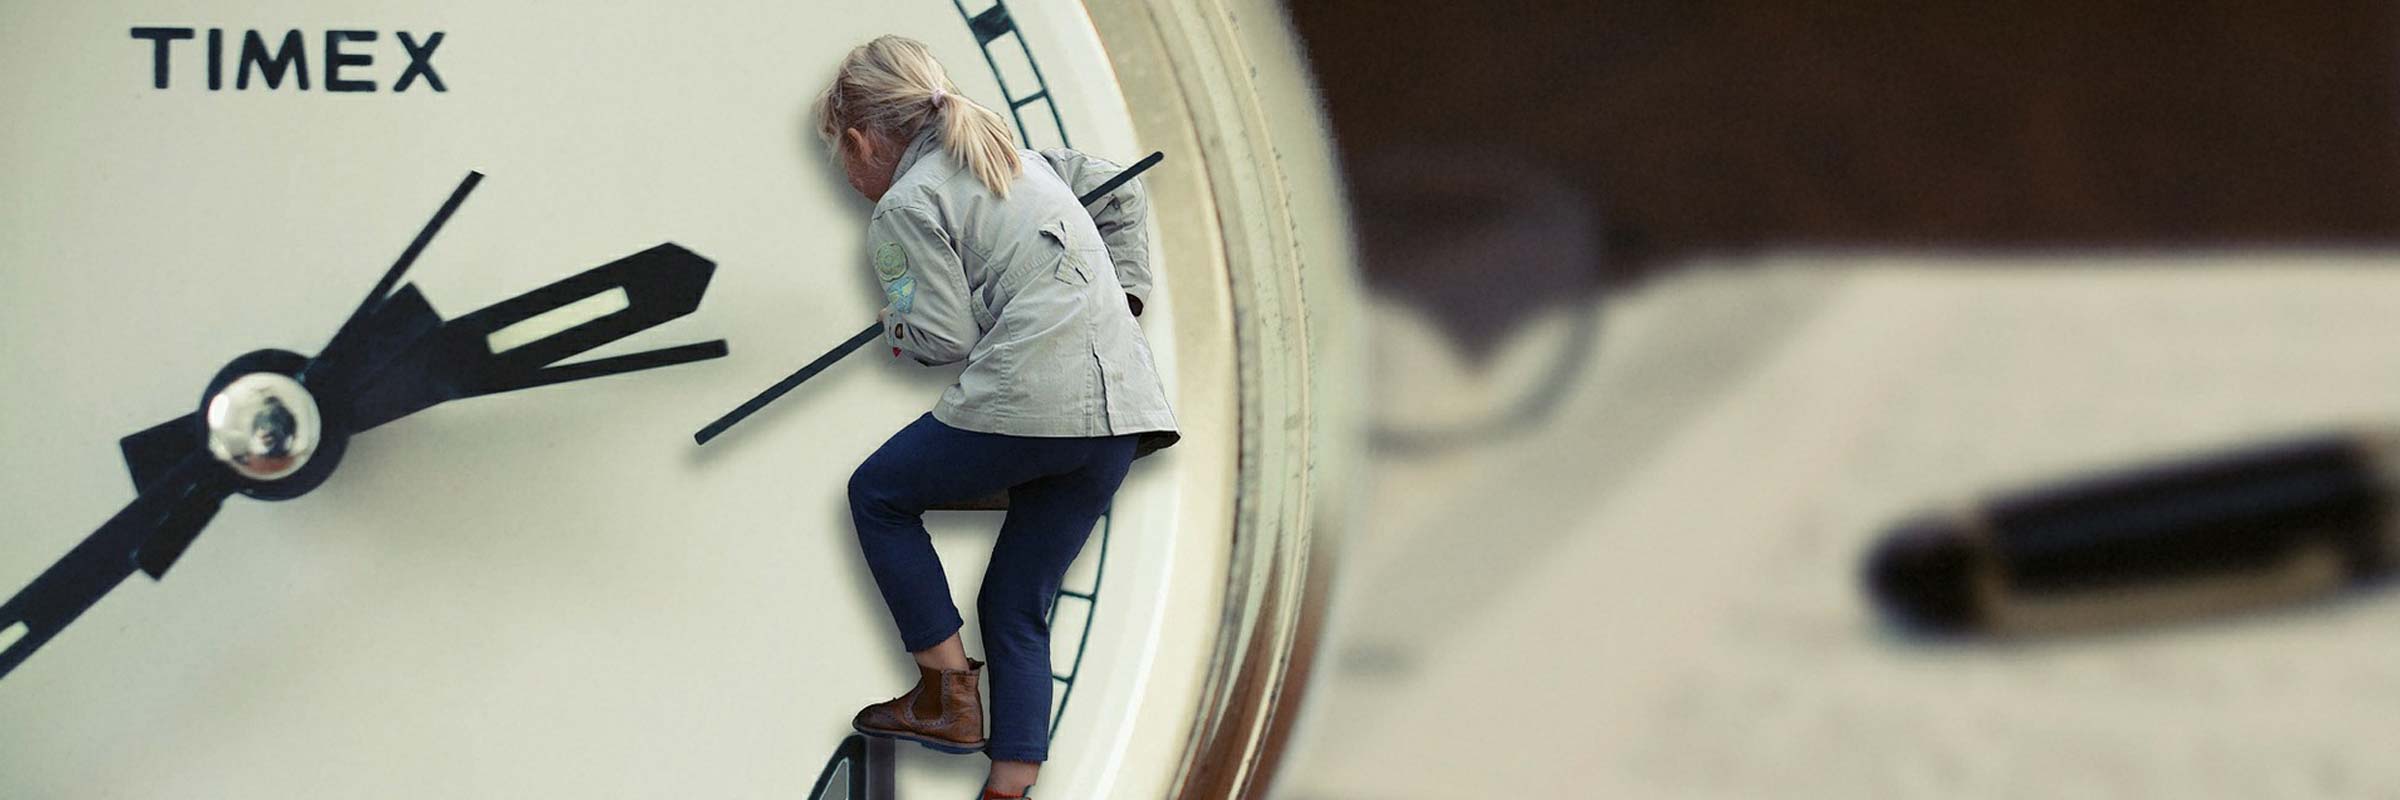 une petite fille blonde grimpe sur les aiguilles d'une horloge